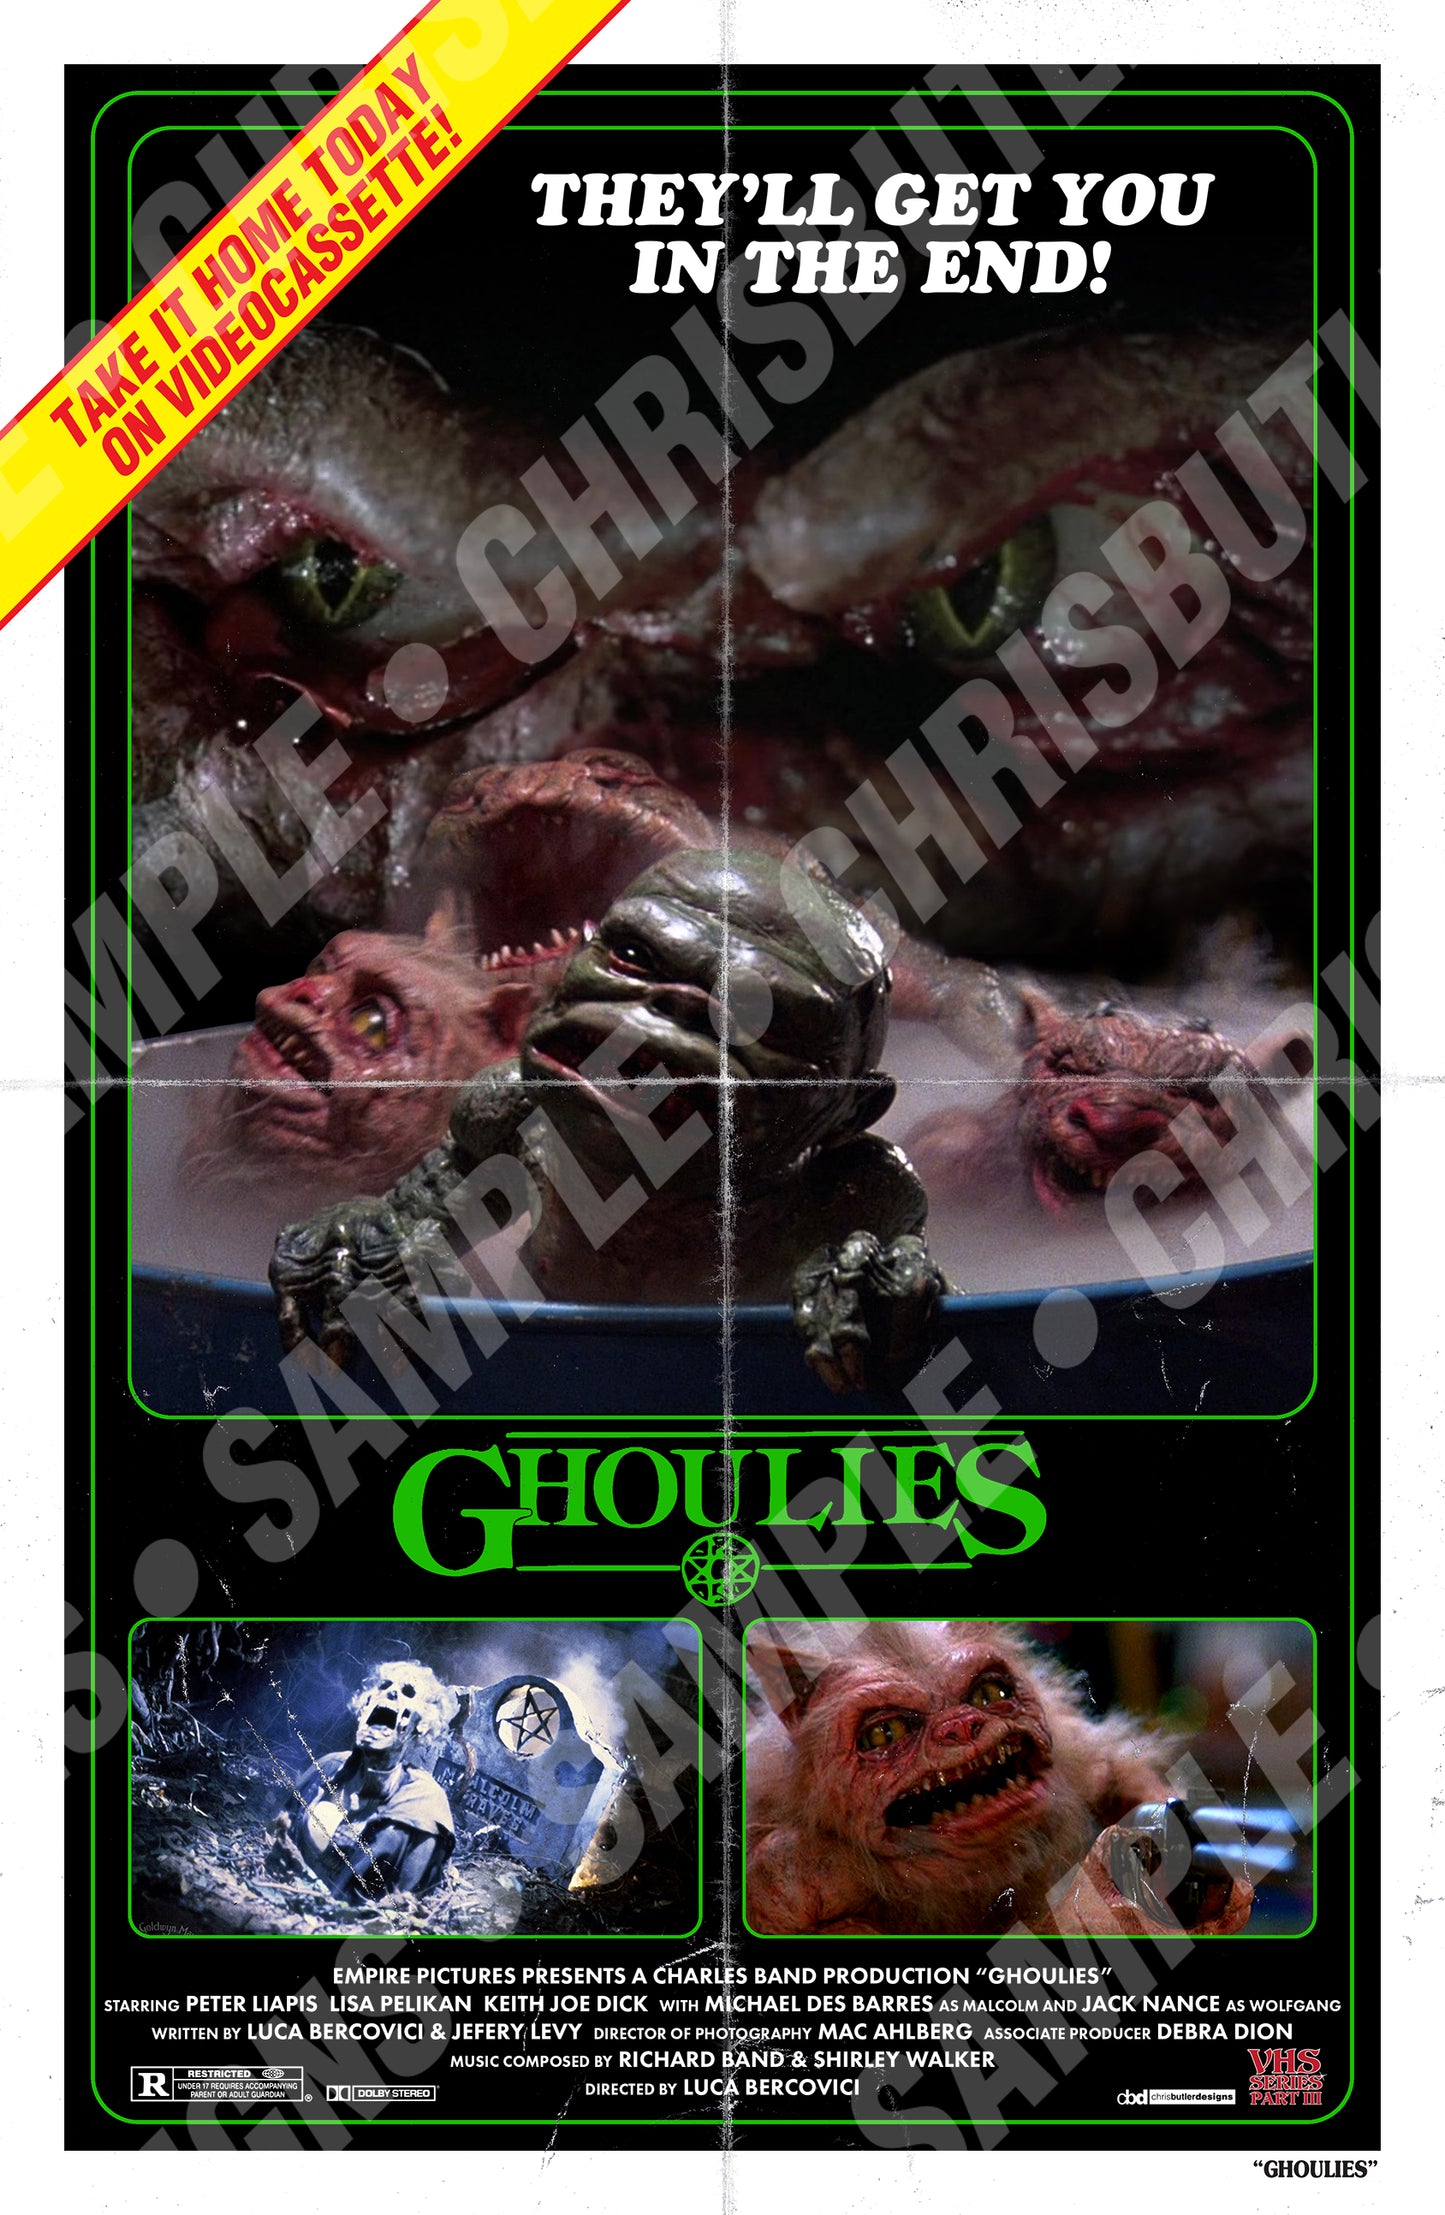 Ghoulies (VHS Series 3) 11x17 Print